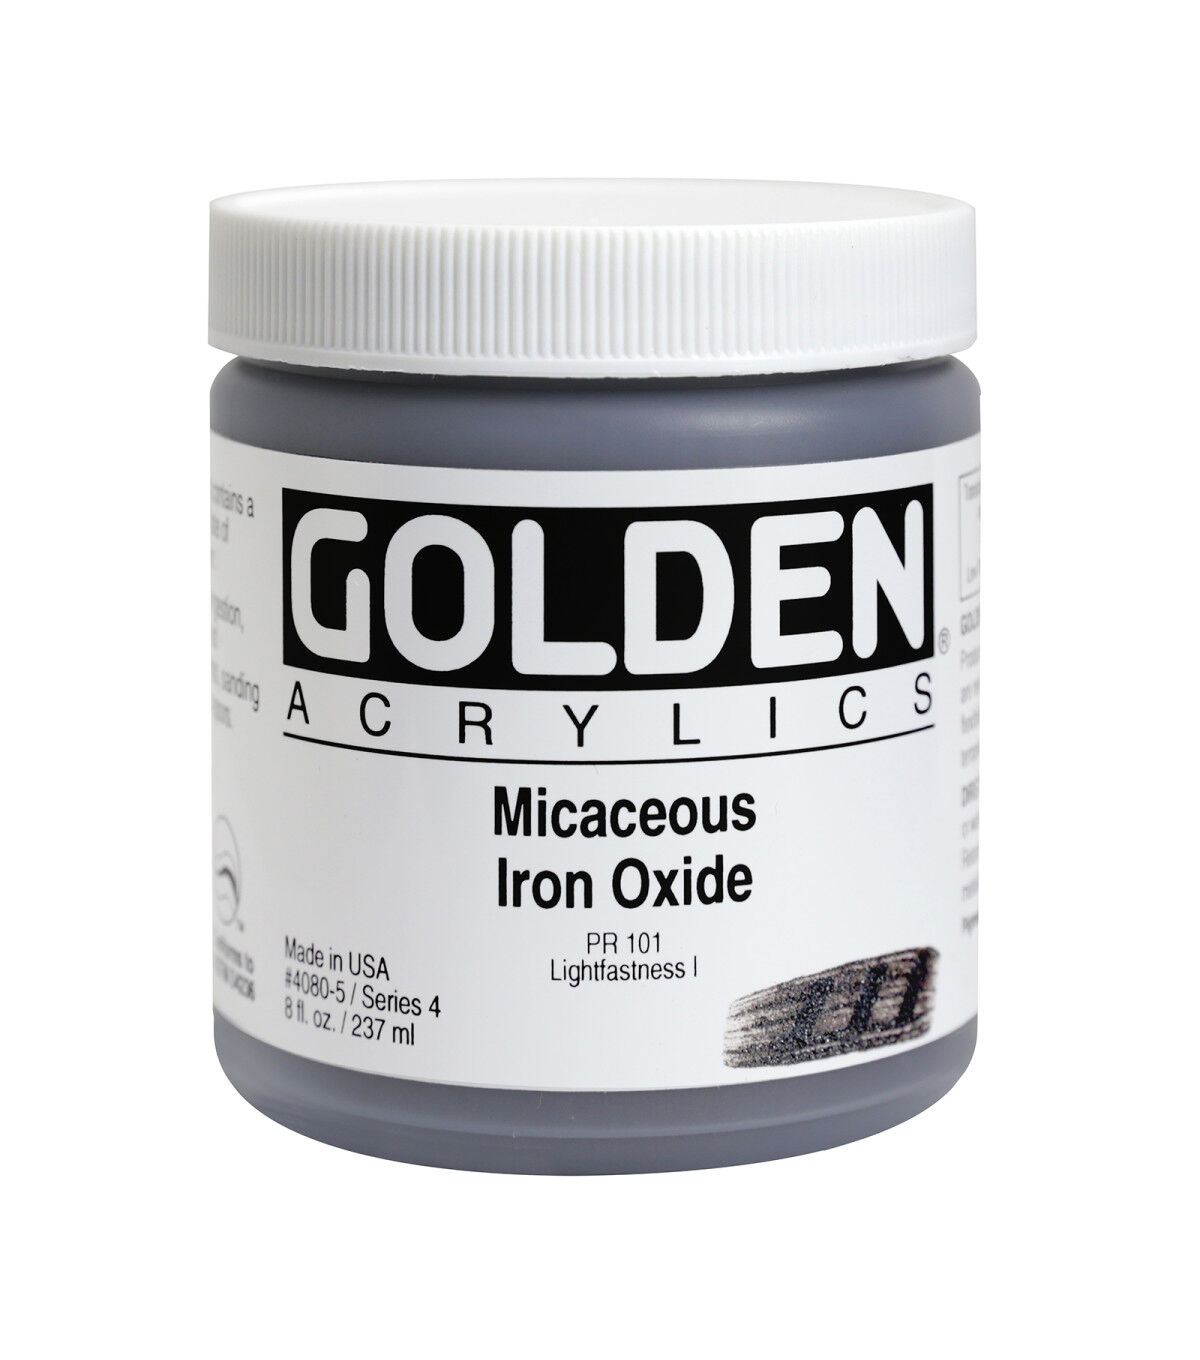 Golden Heavy Body Acrylic - Medium Violet 5 oz.